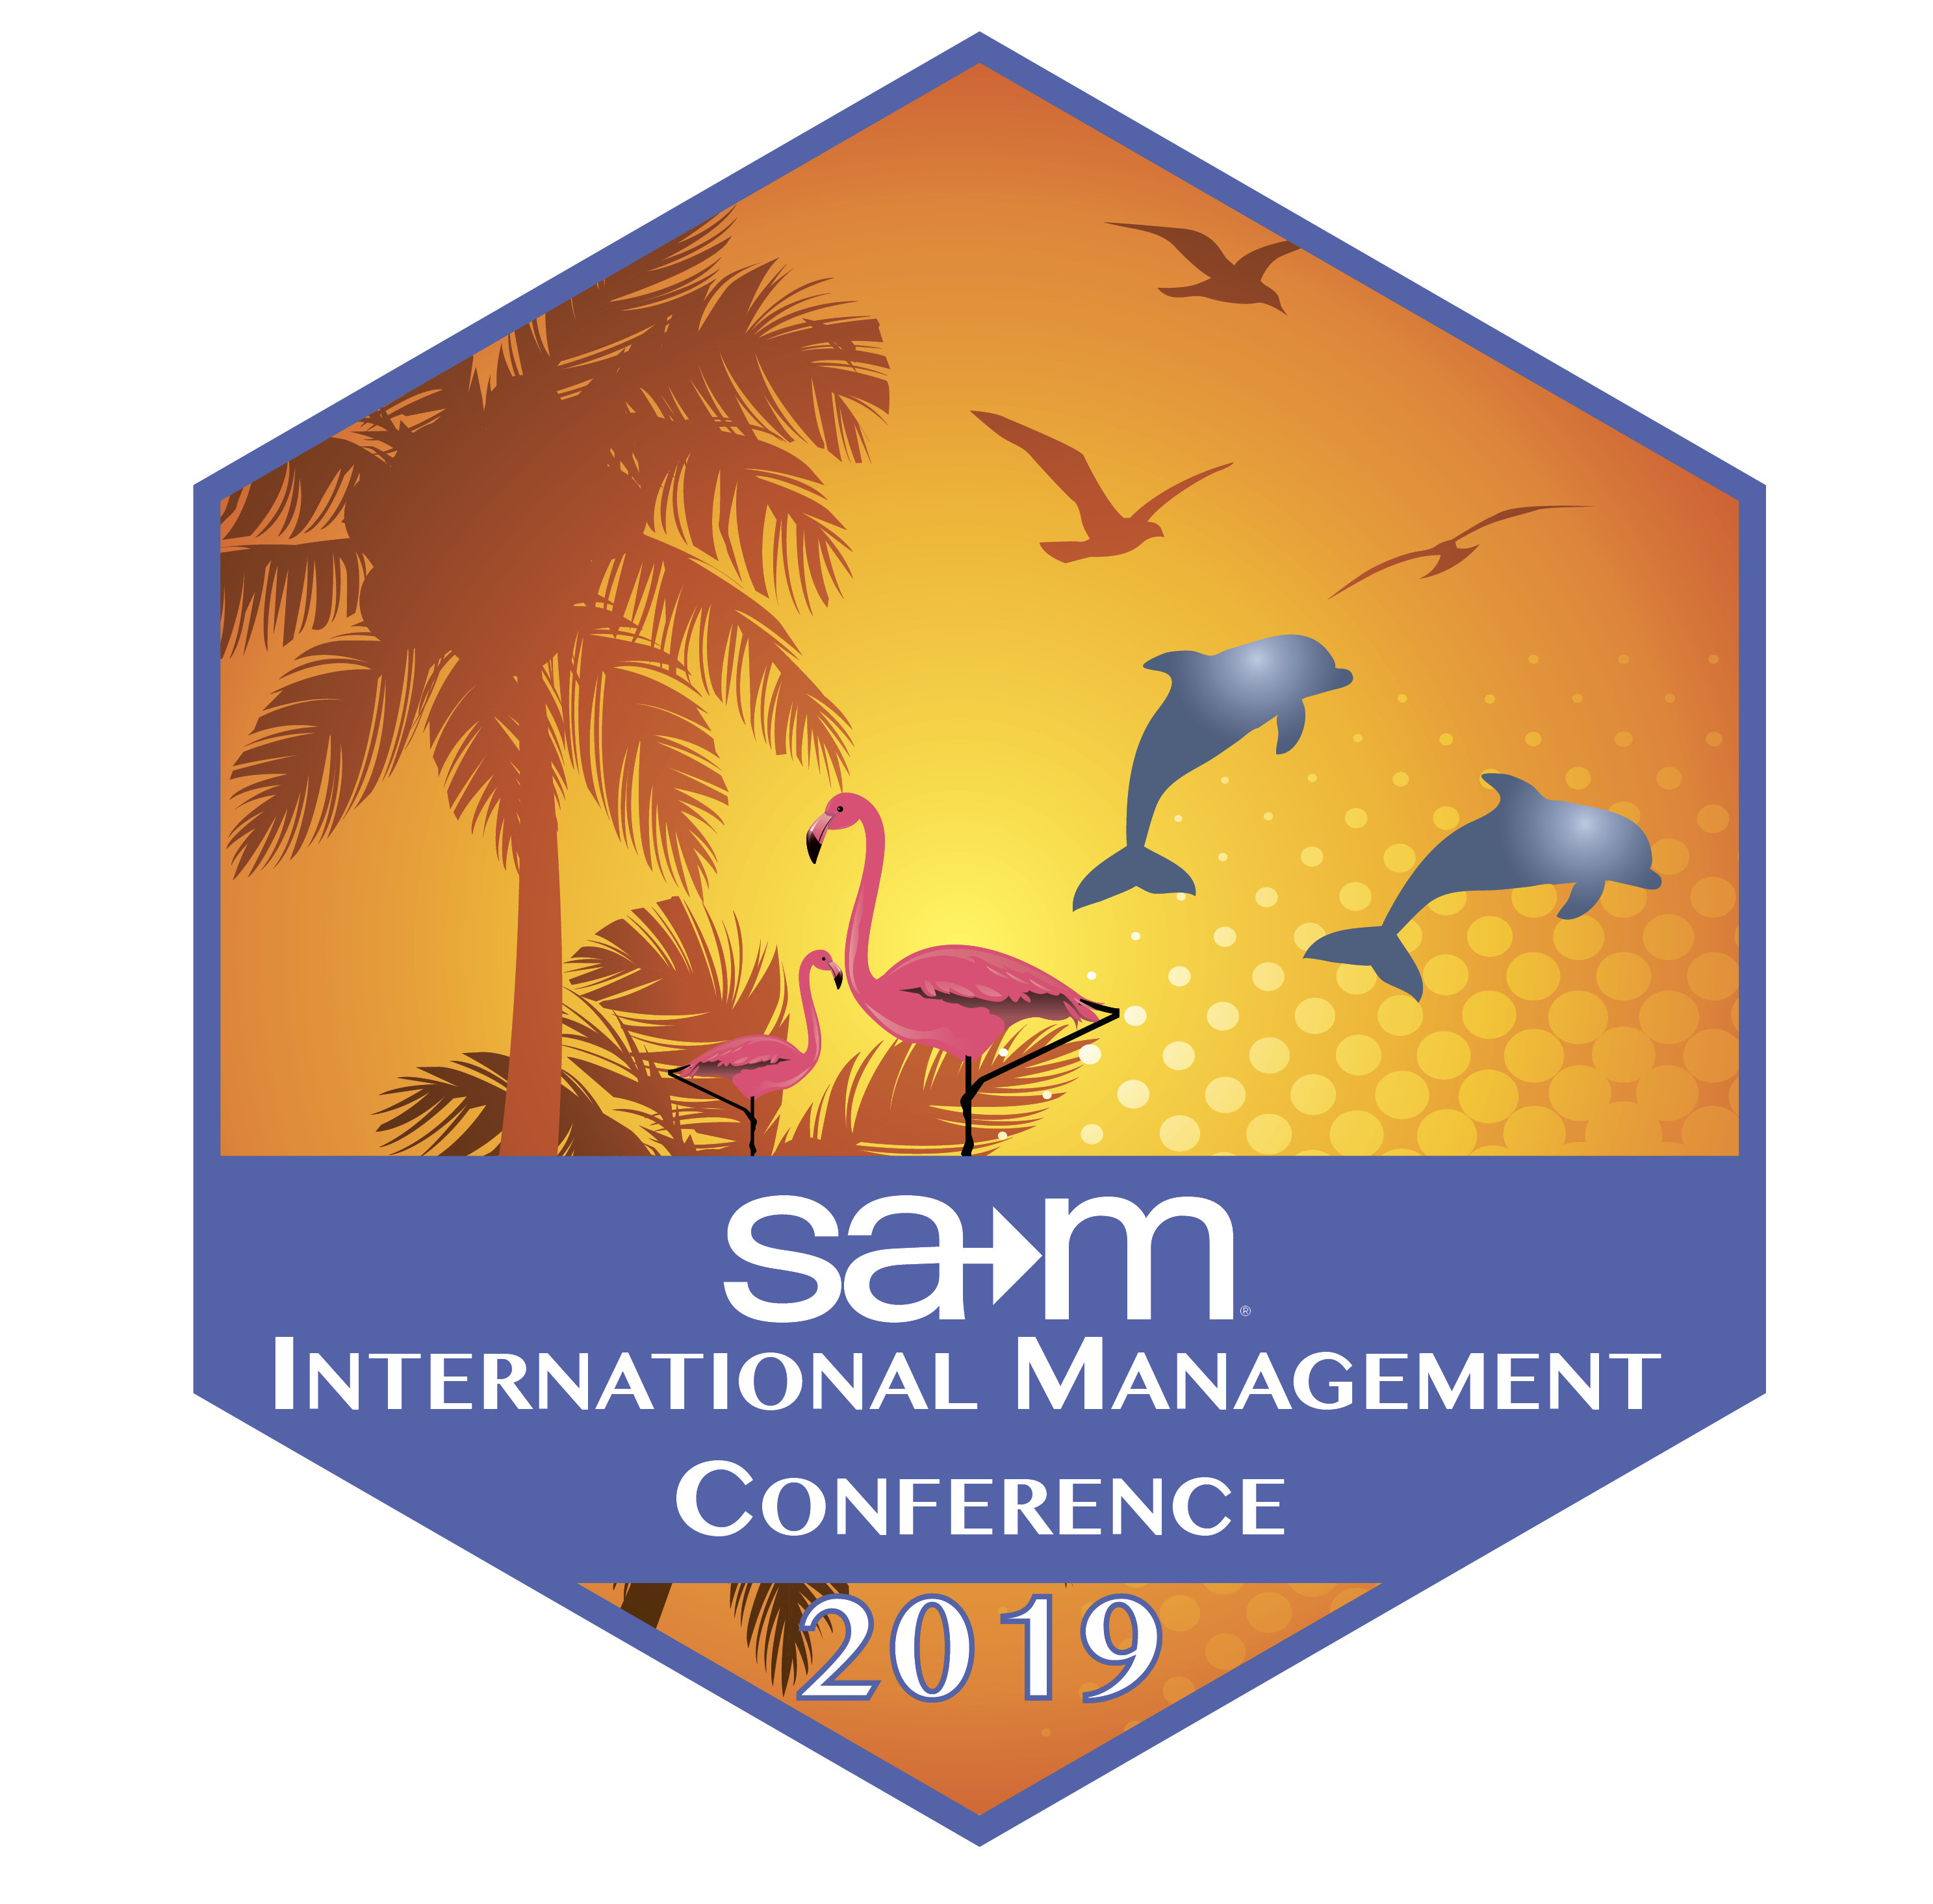 SAM International Management Conference 2019